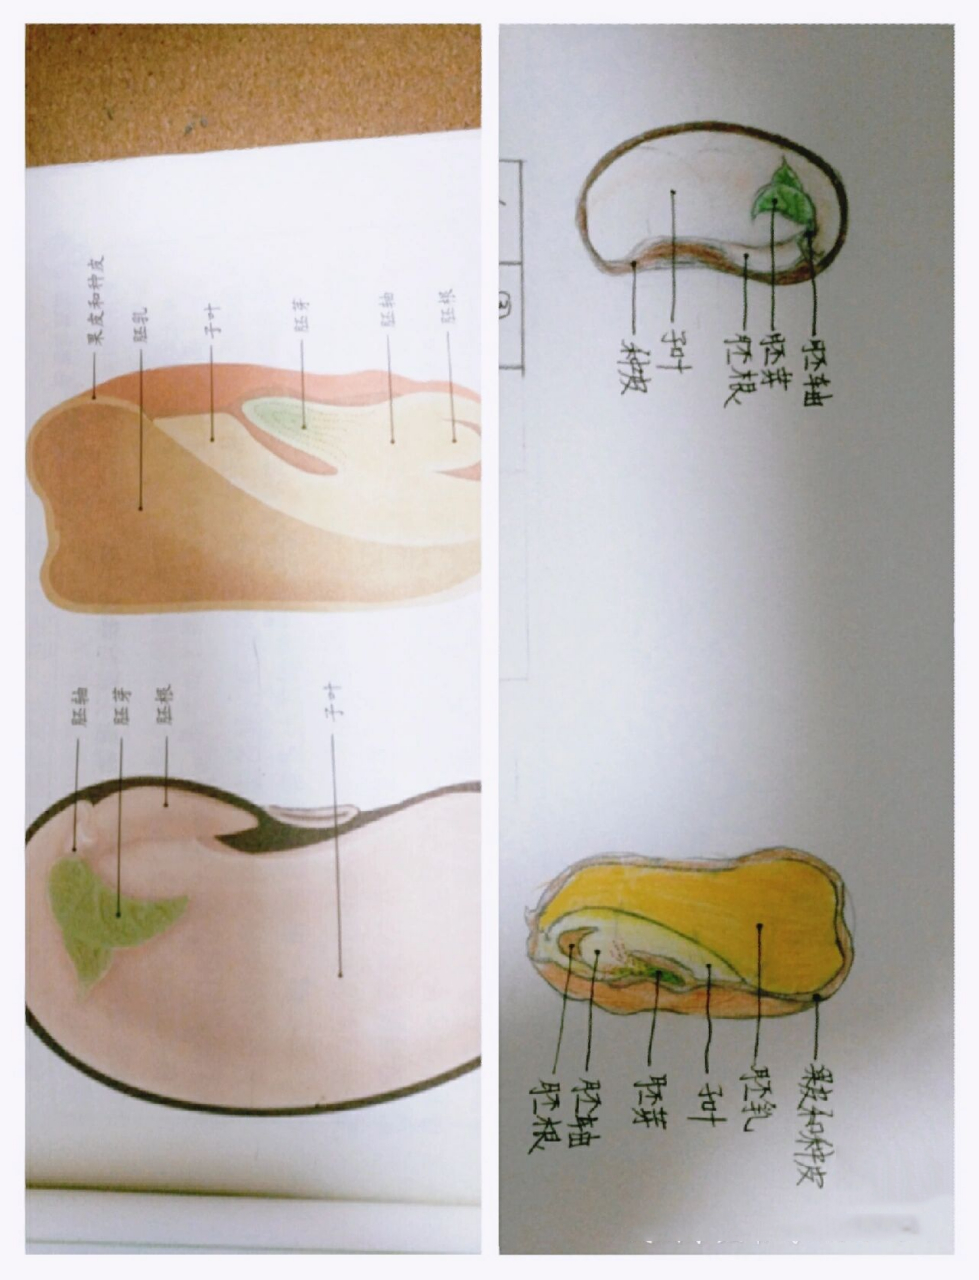 种子结构简图图片